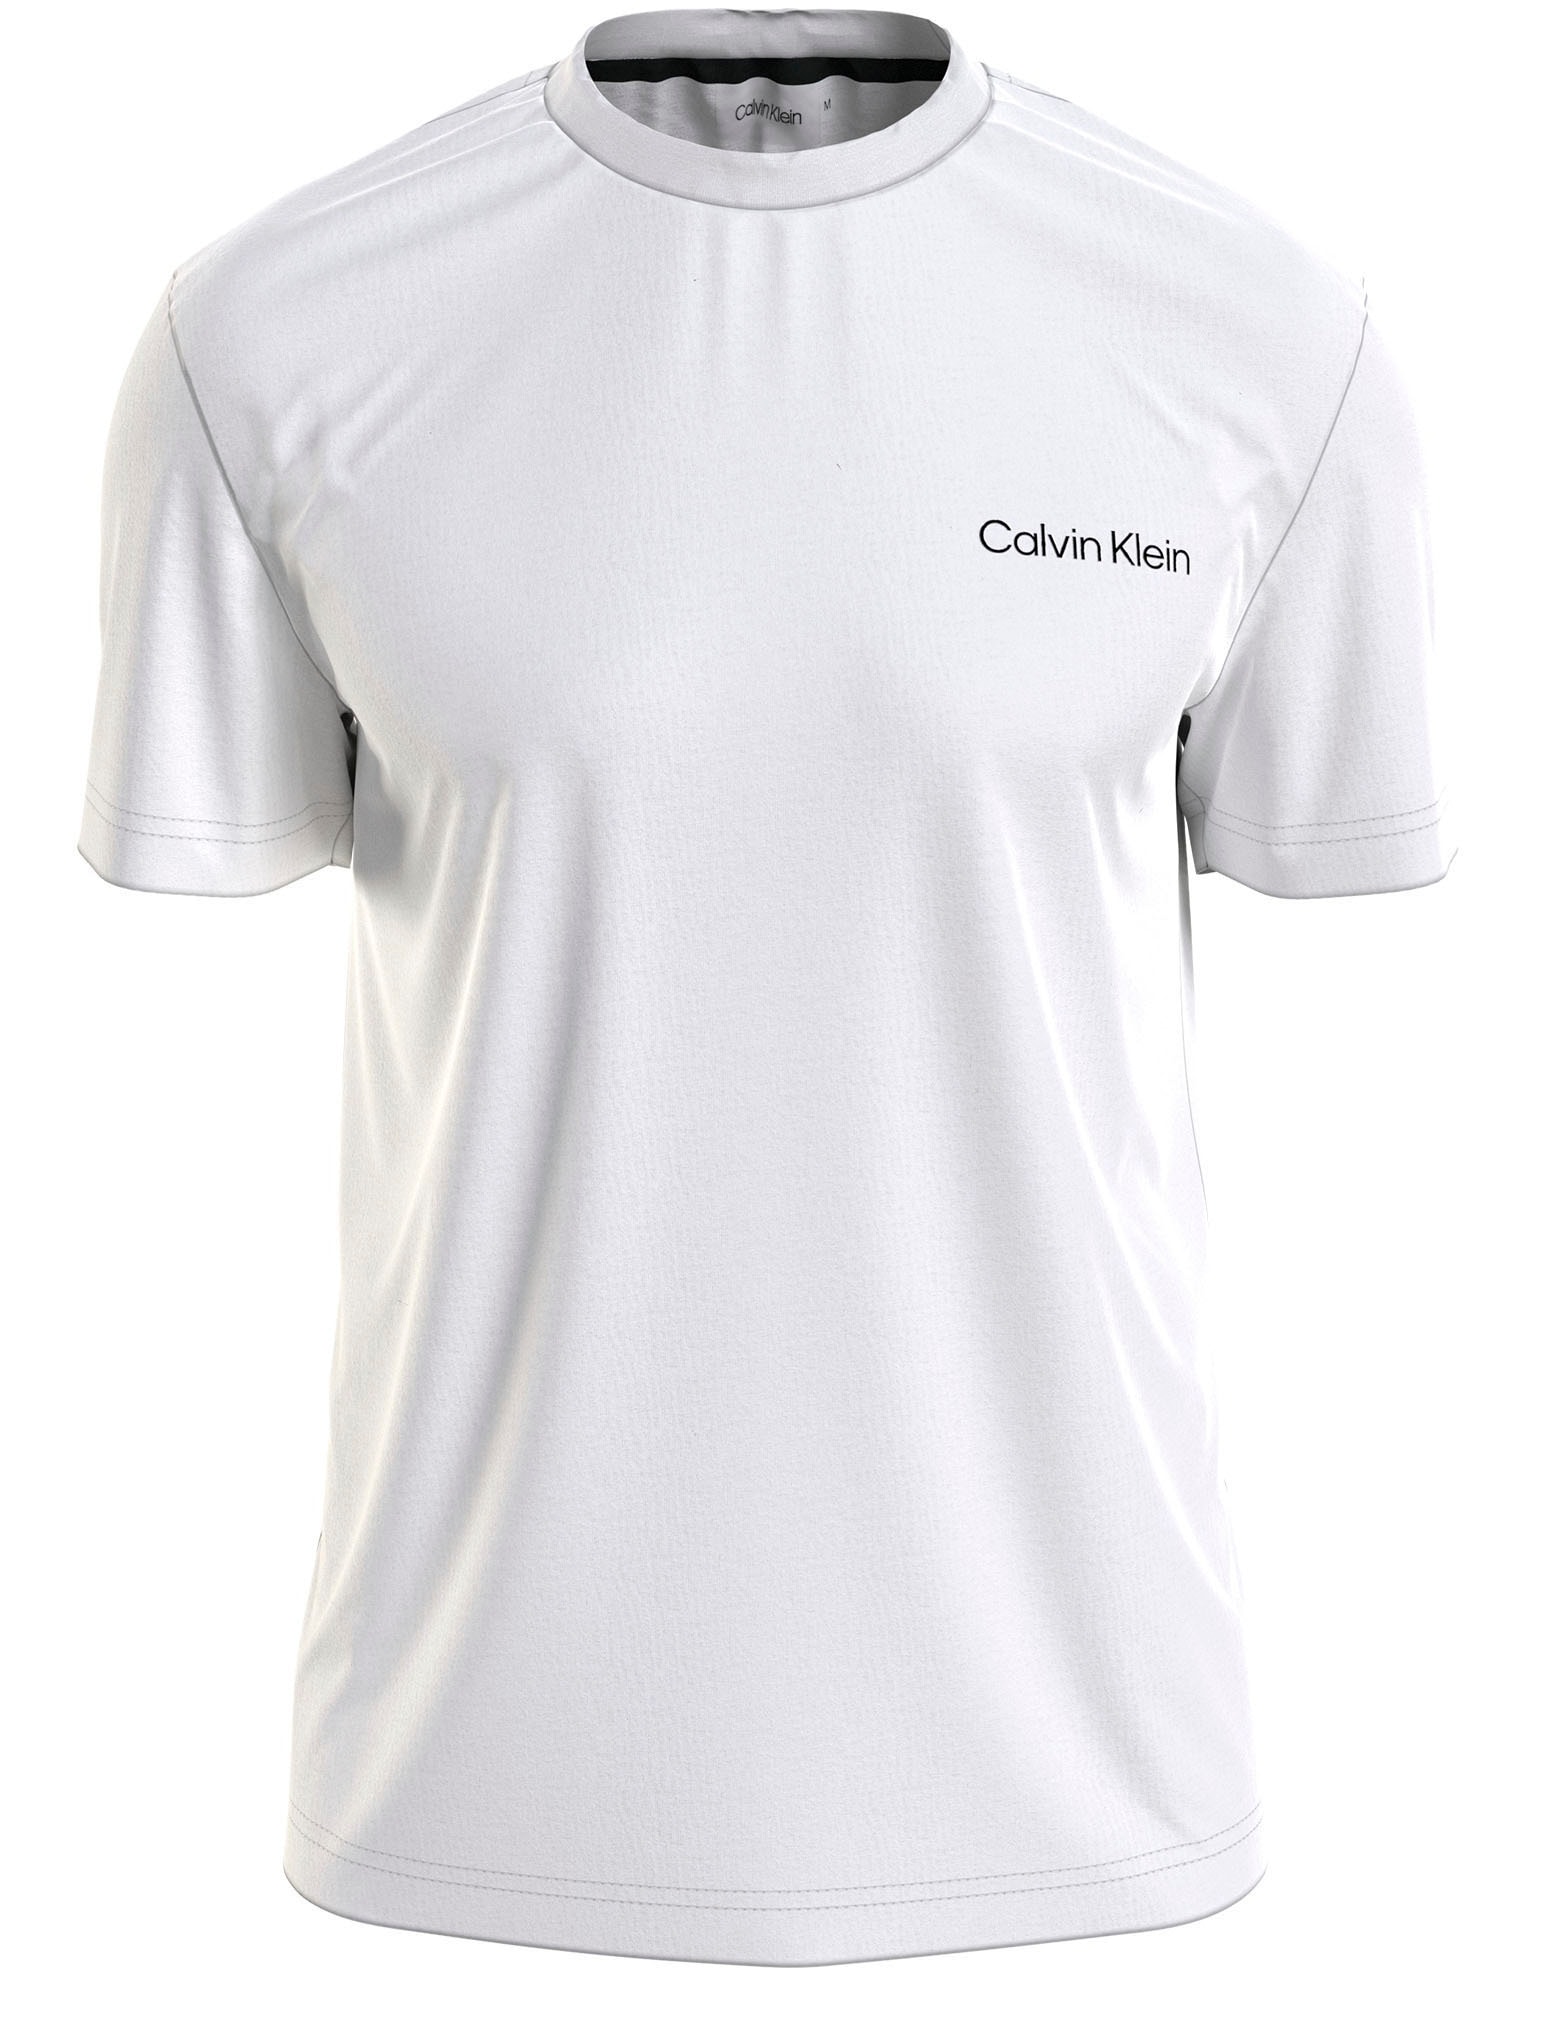 ♕ Calvin Klein T-Shirt »ANGLED BACK LOGO T-SHIRT« versandkostenfrei auf